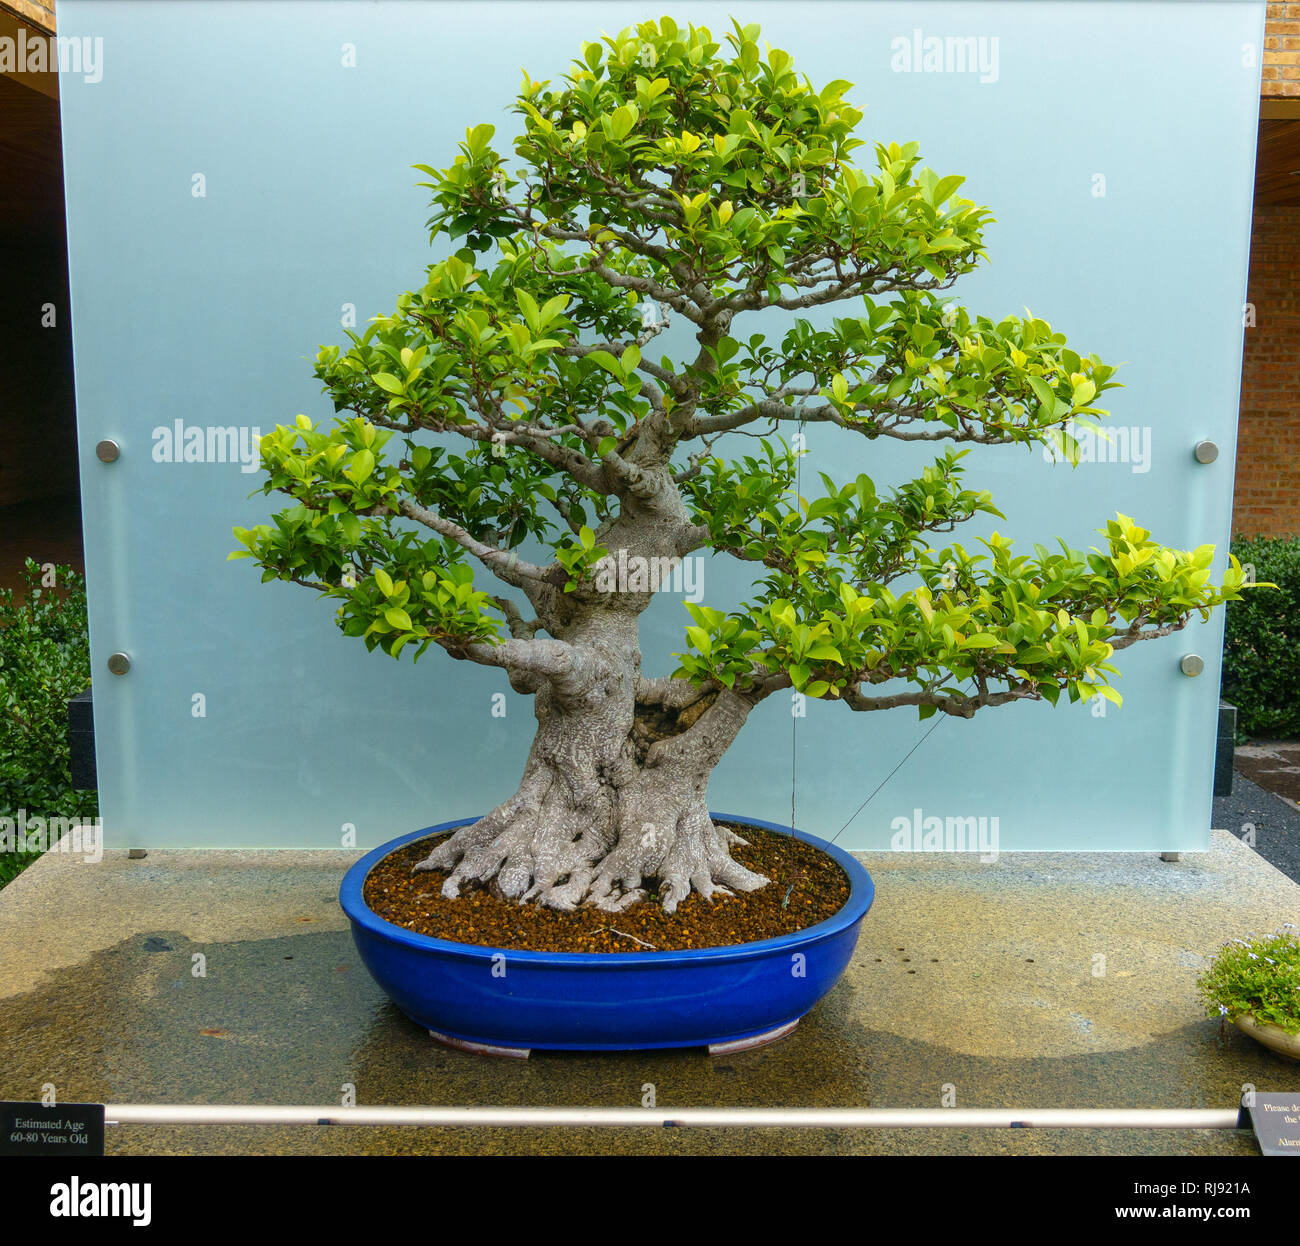 Bonsai Baum etwa 60 - 70 Jahre alt Stockfotografie - Alamy